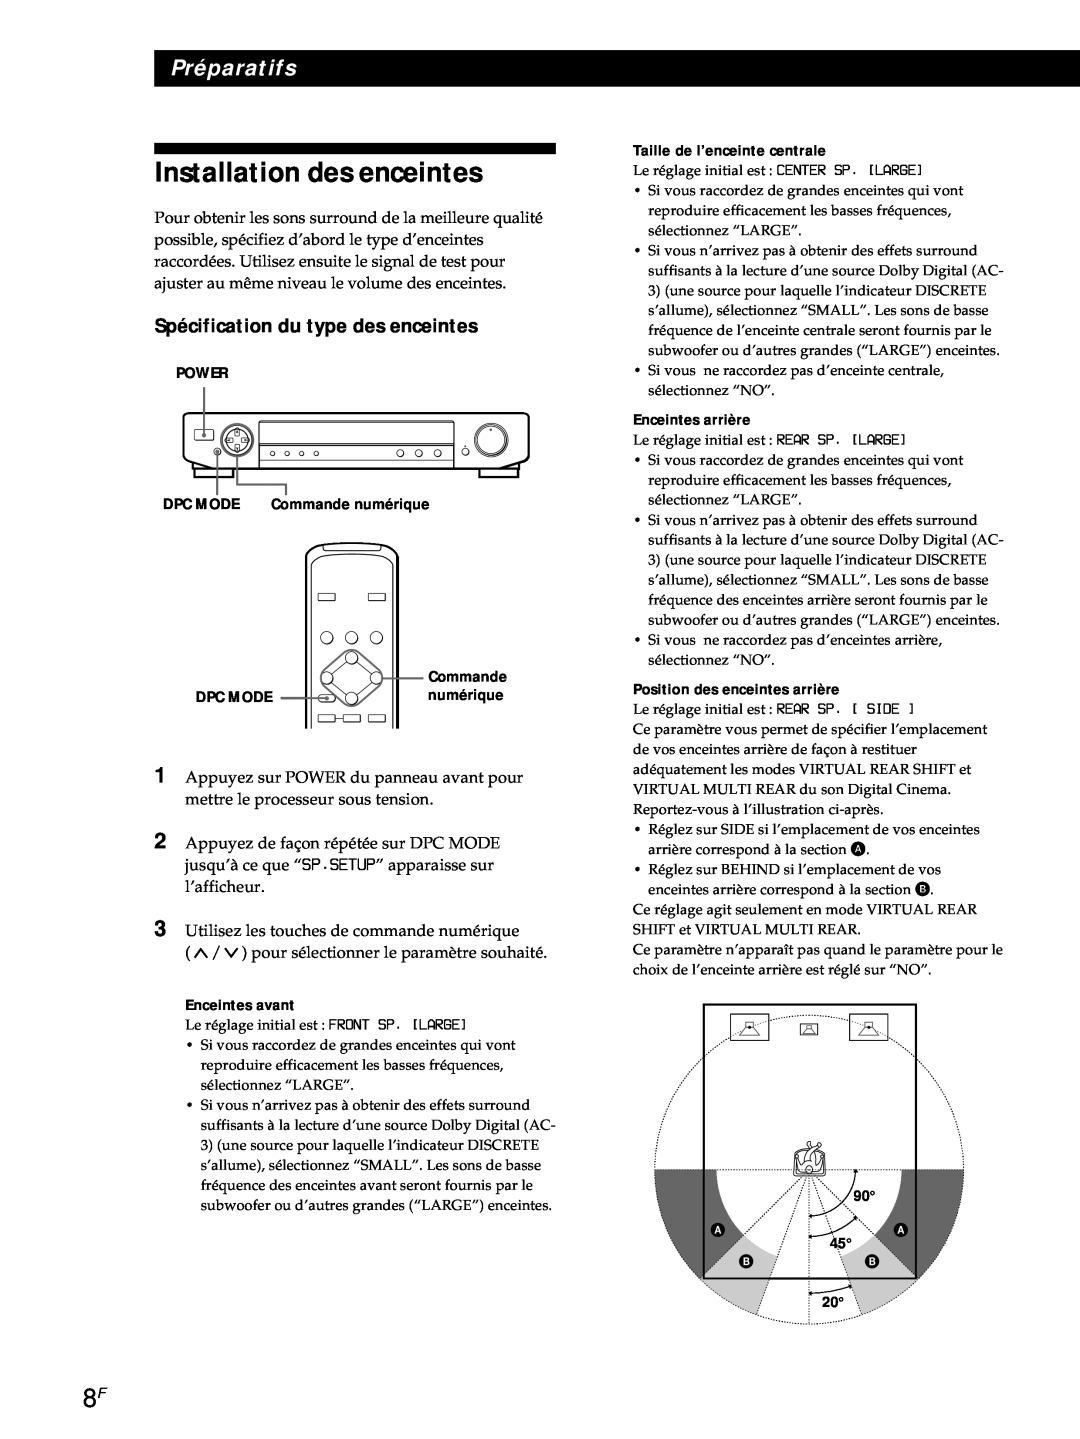 Sony SDP-E800 operating instructions Installation des enceintes, Spécification du type des enceintes, Préparatifs 